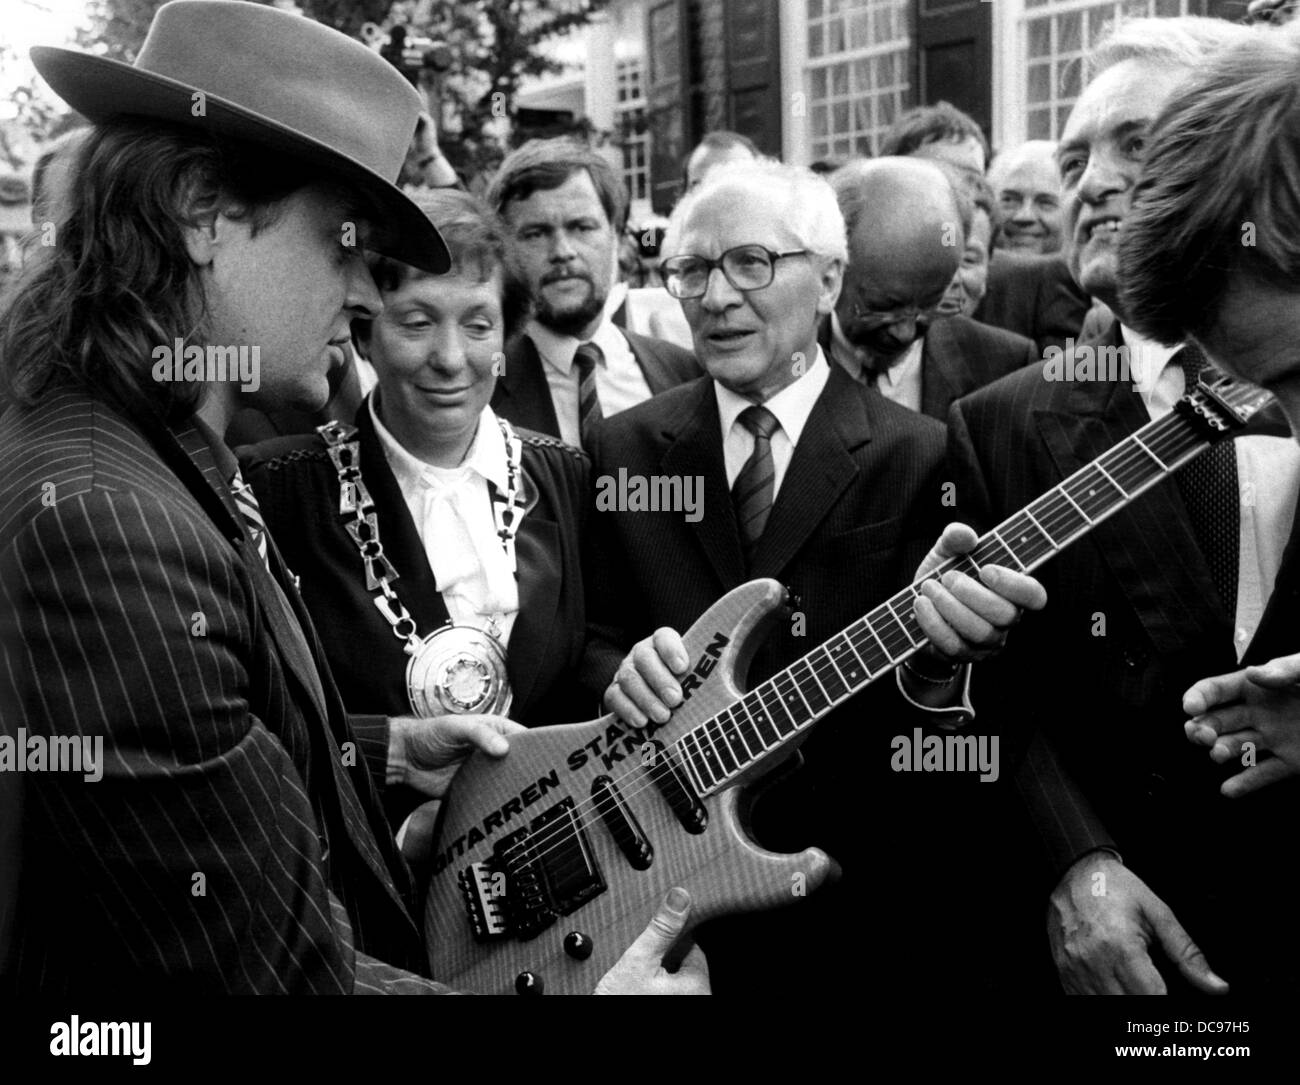 Generalsekretär der SED Erich Honecker (m) erhält eine Gitarre von Rockmusiker Udo Lindenberg als Geschenk während des ersten Besuchs eines Staatsoberhaupts der DDR in der BRD in Wuppertal im September 1987. Bürgermeister von Wuppertal Ursula Kraus in der Mitte, um ihre richtige Ministerpräsident von Nordrhein-Westfalen Johannes Rau. Stockfoto